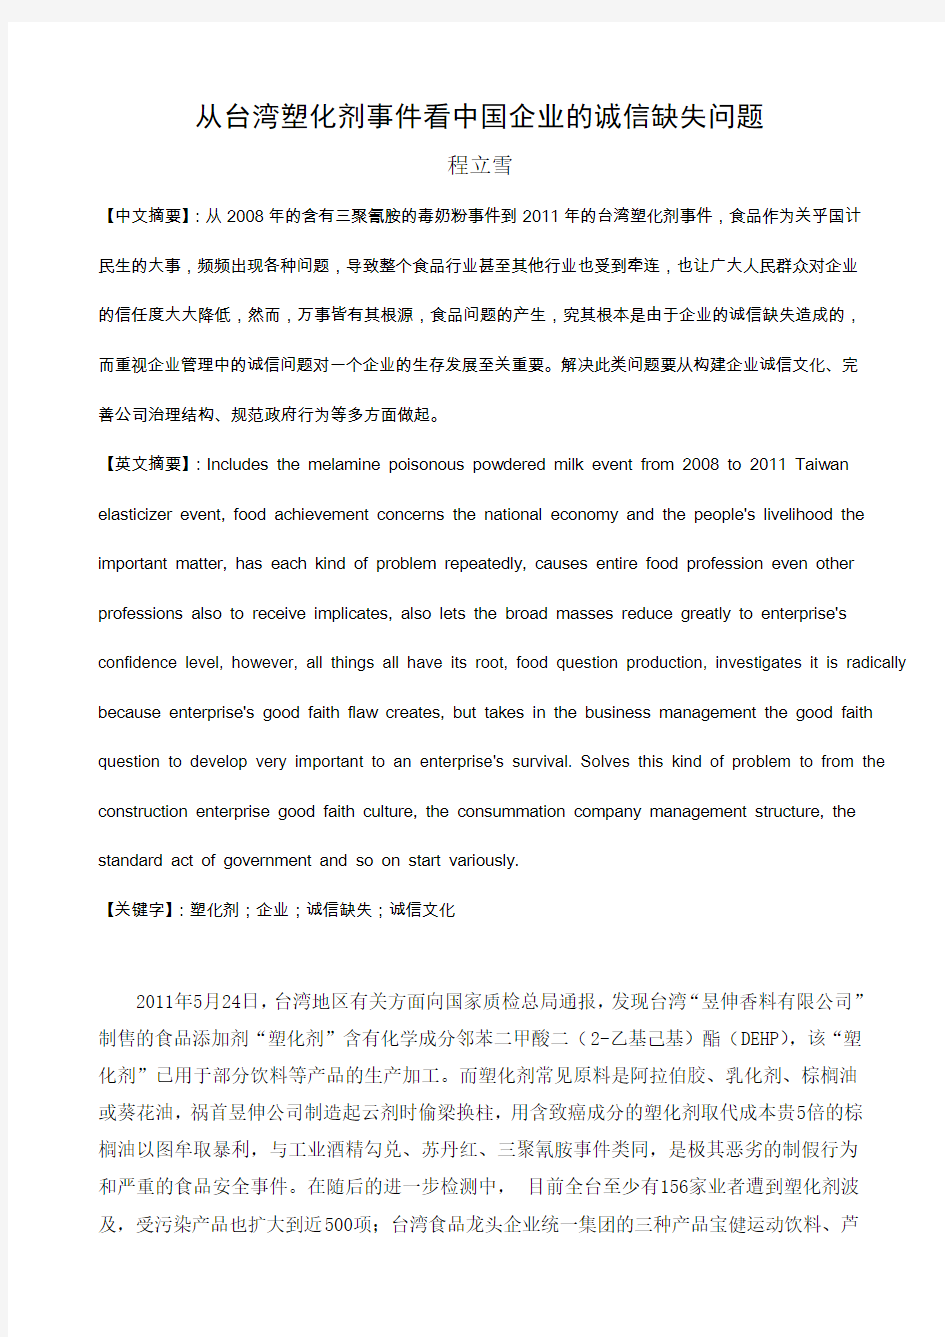 从台湾塑化剂事件看中国企业的诚信缺失问题